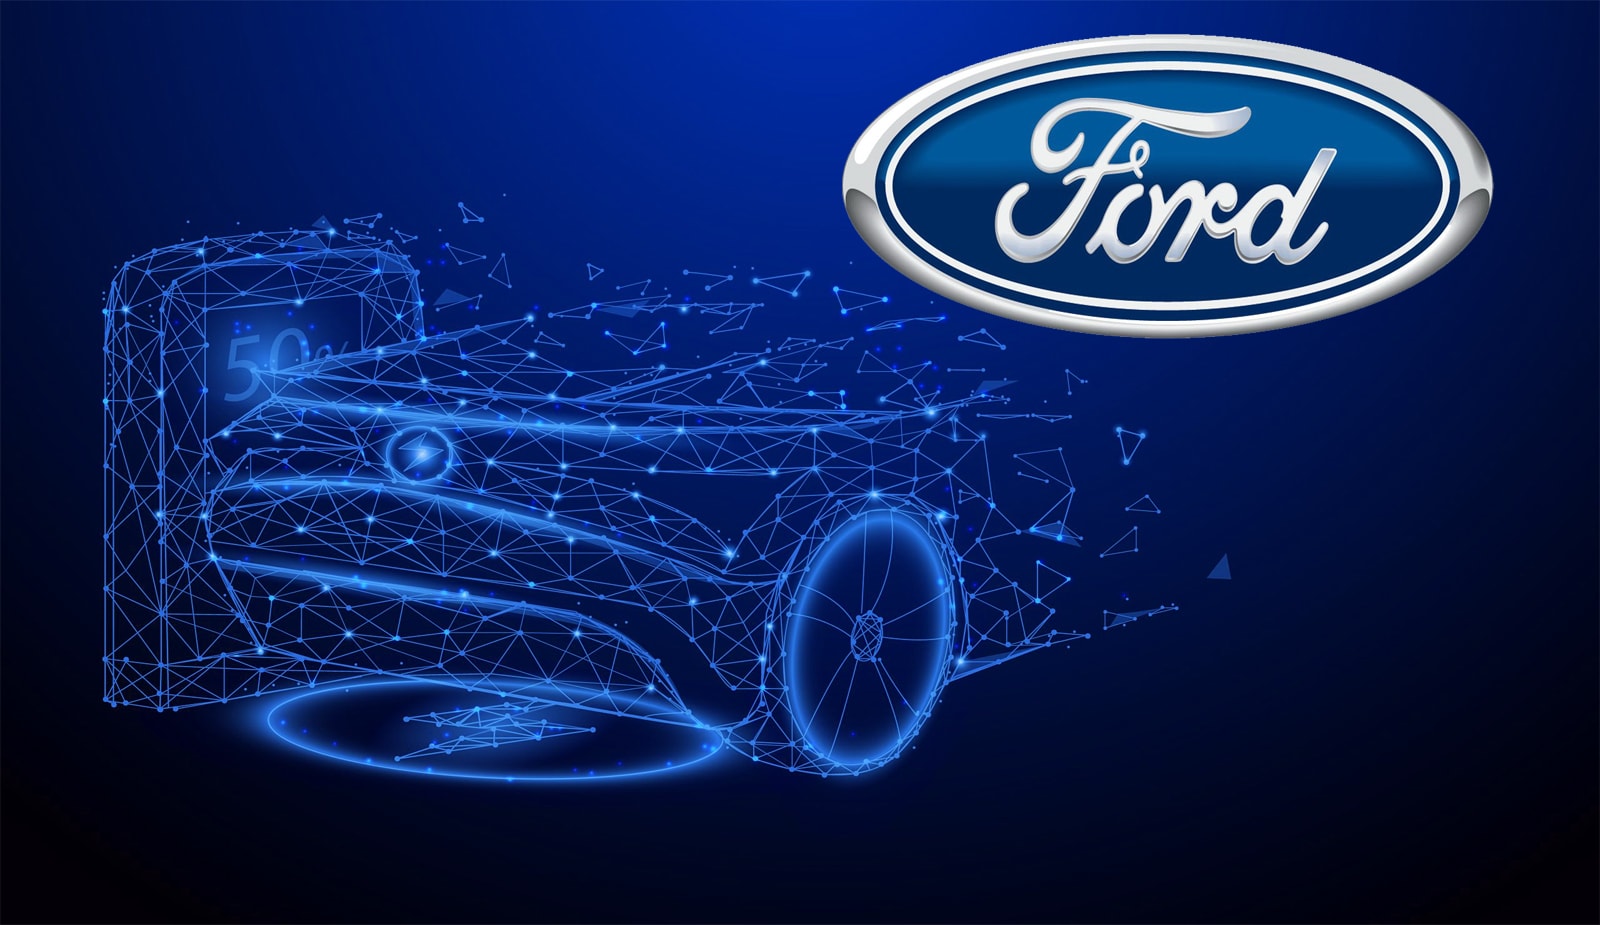 Ford “ныряет” в метавселенную и регистрирует 19 товарных крипто-знаков. Заглавный коллаж новости.